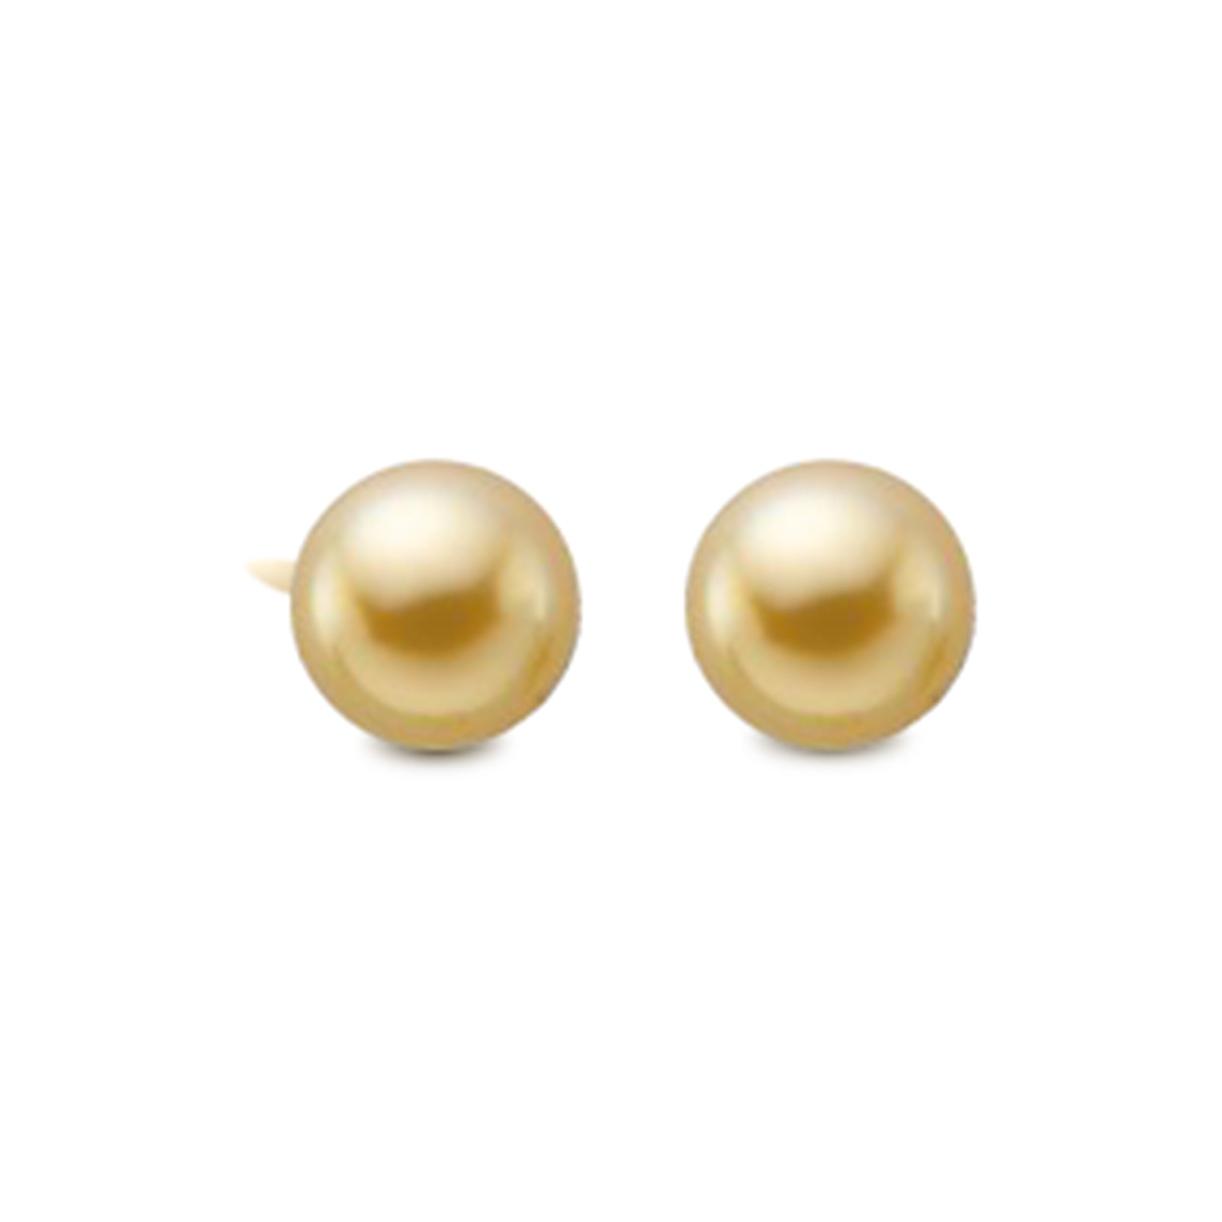 Child's Gold Earrings